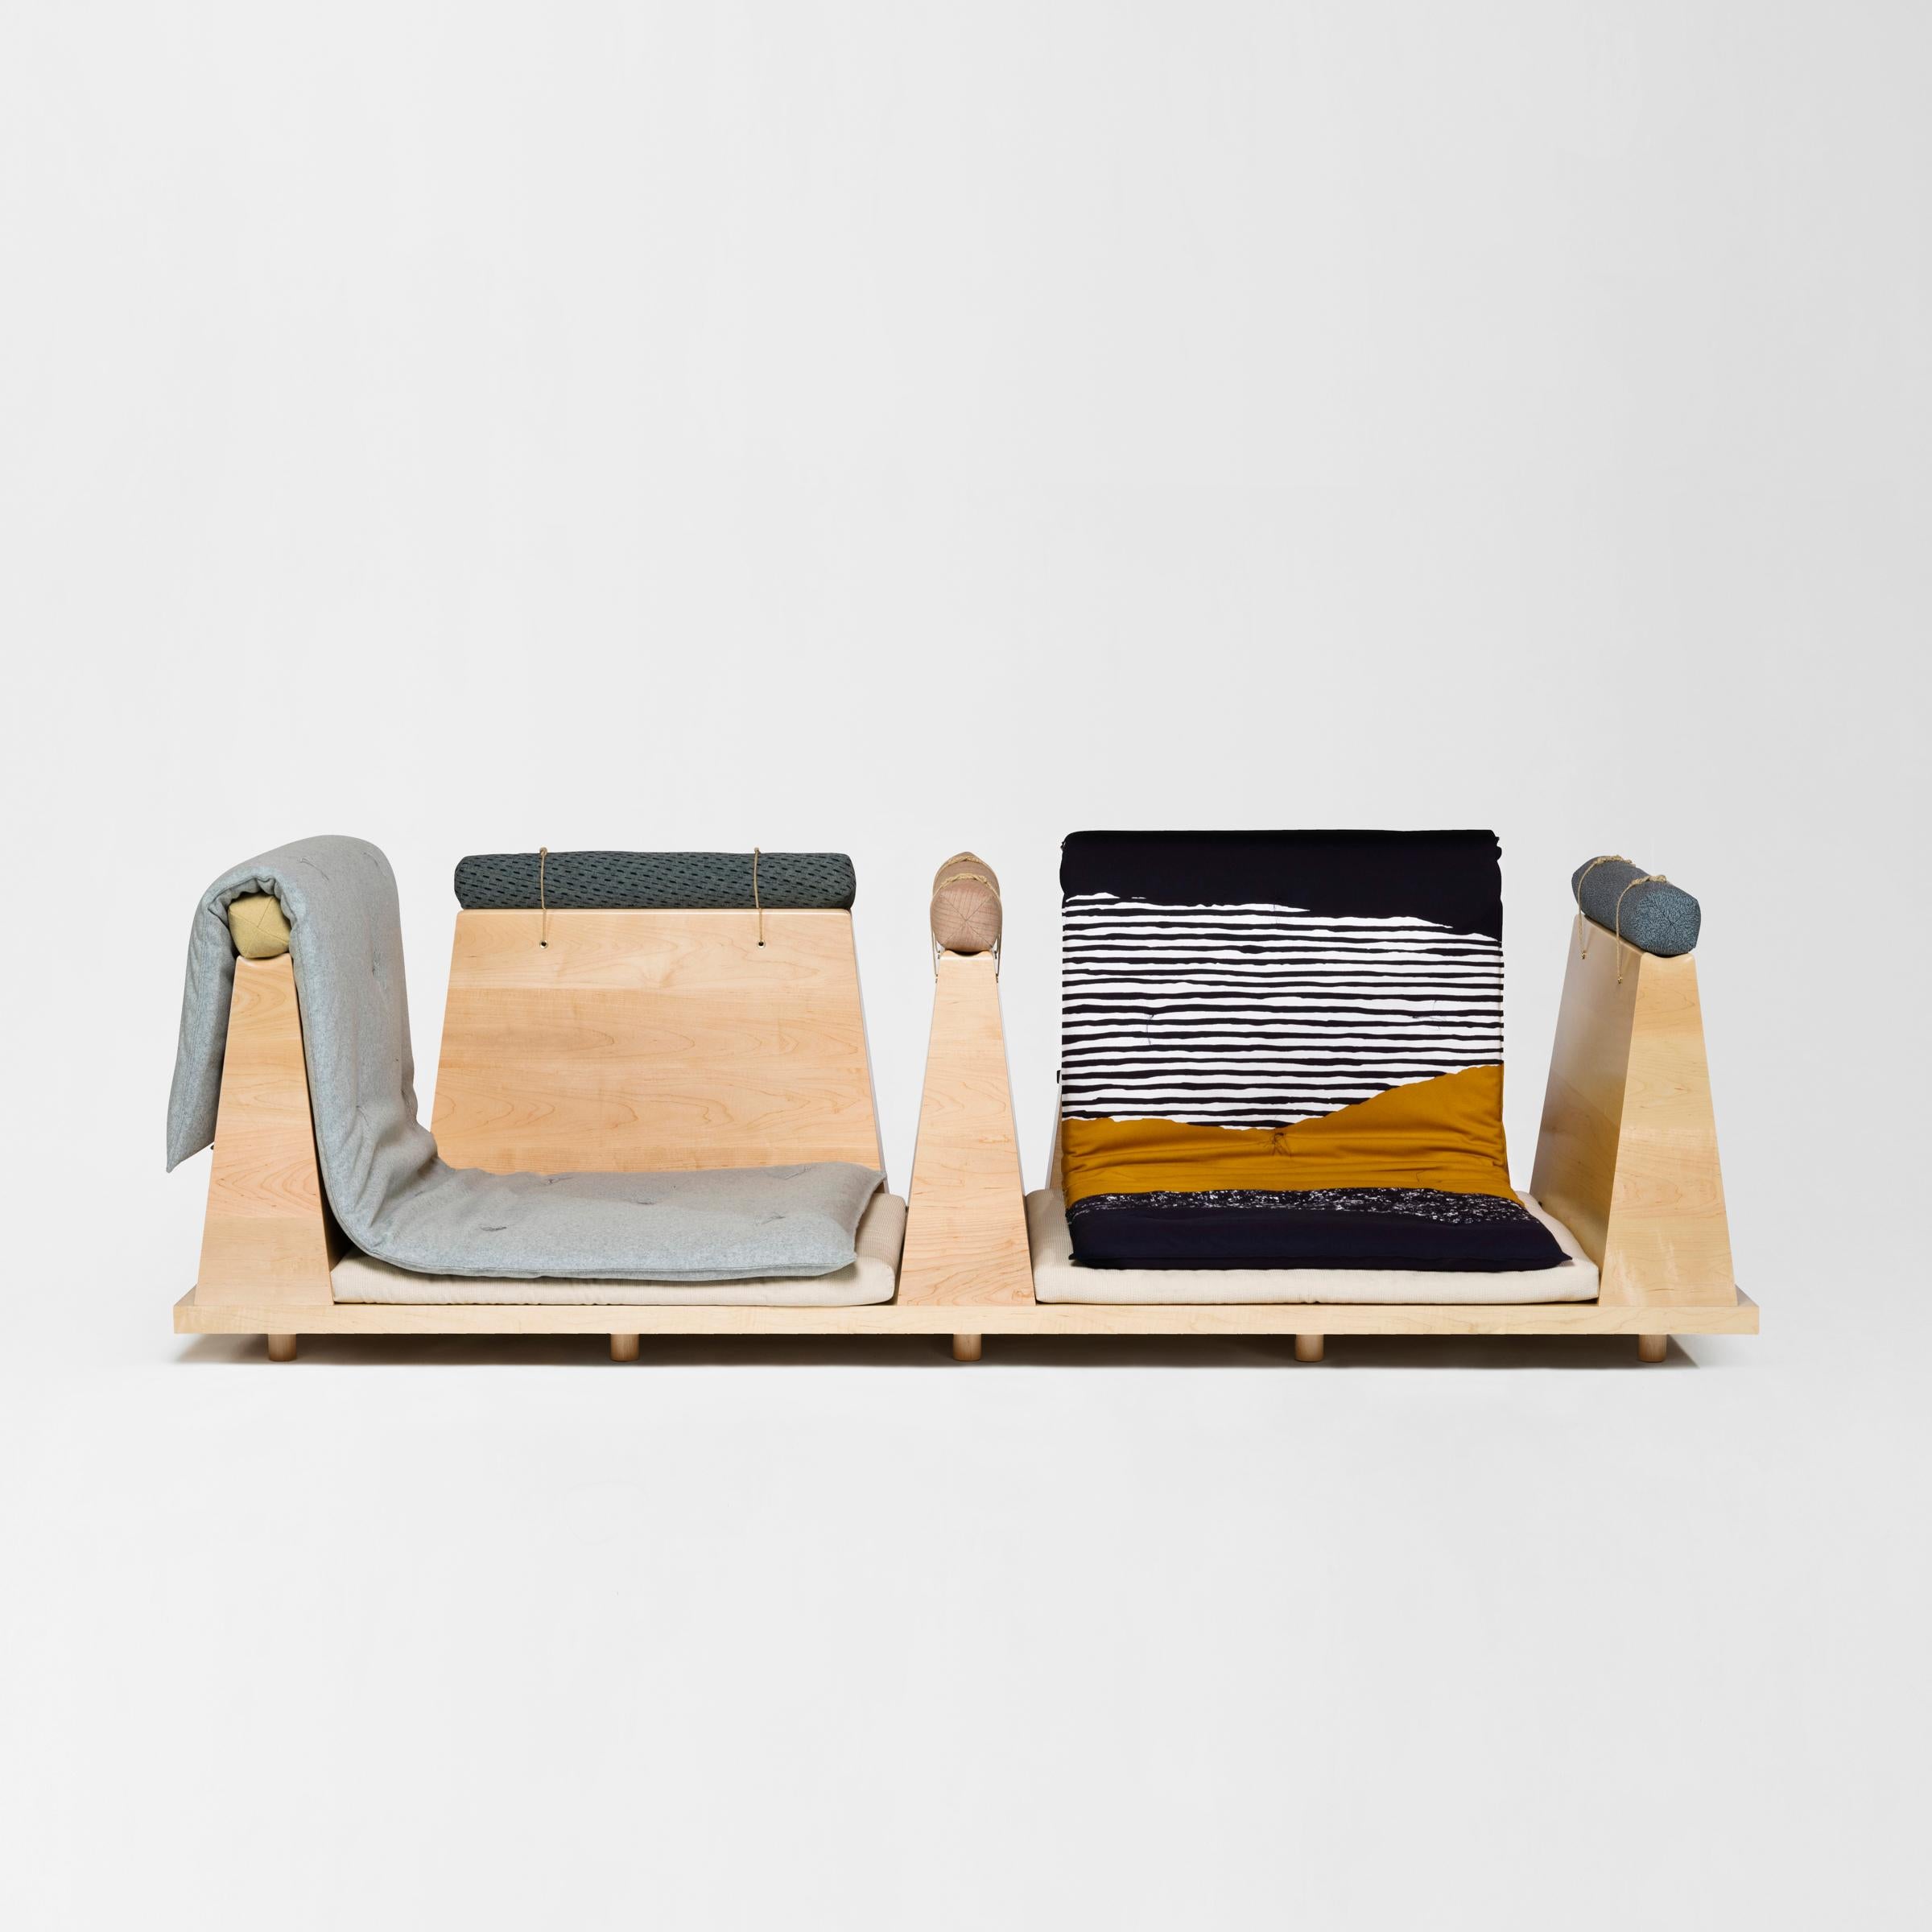 Das Zabuton Sofa ist in unendlich vielen Konfigurationen erhältlich.
Es ist durch das modulare System von Holztrennwänden, Futon, Zabuton und Nackenrollen anpassbar. Start
mit einem Holzsockel können die vier Elemente in verschiedenen Kombinationen